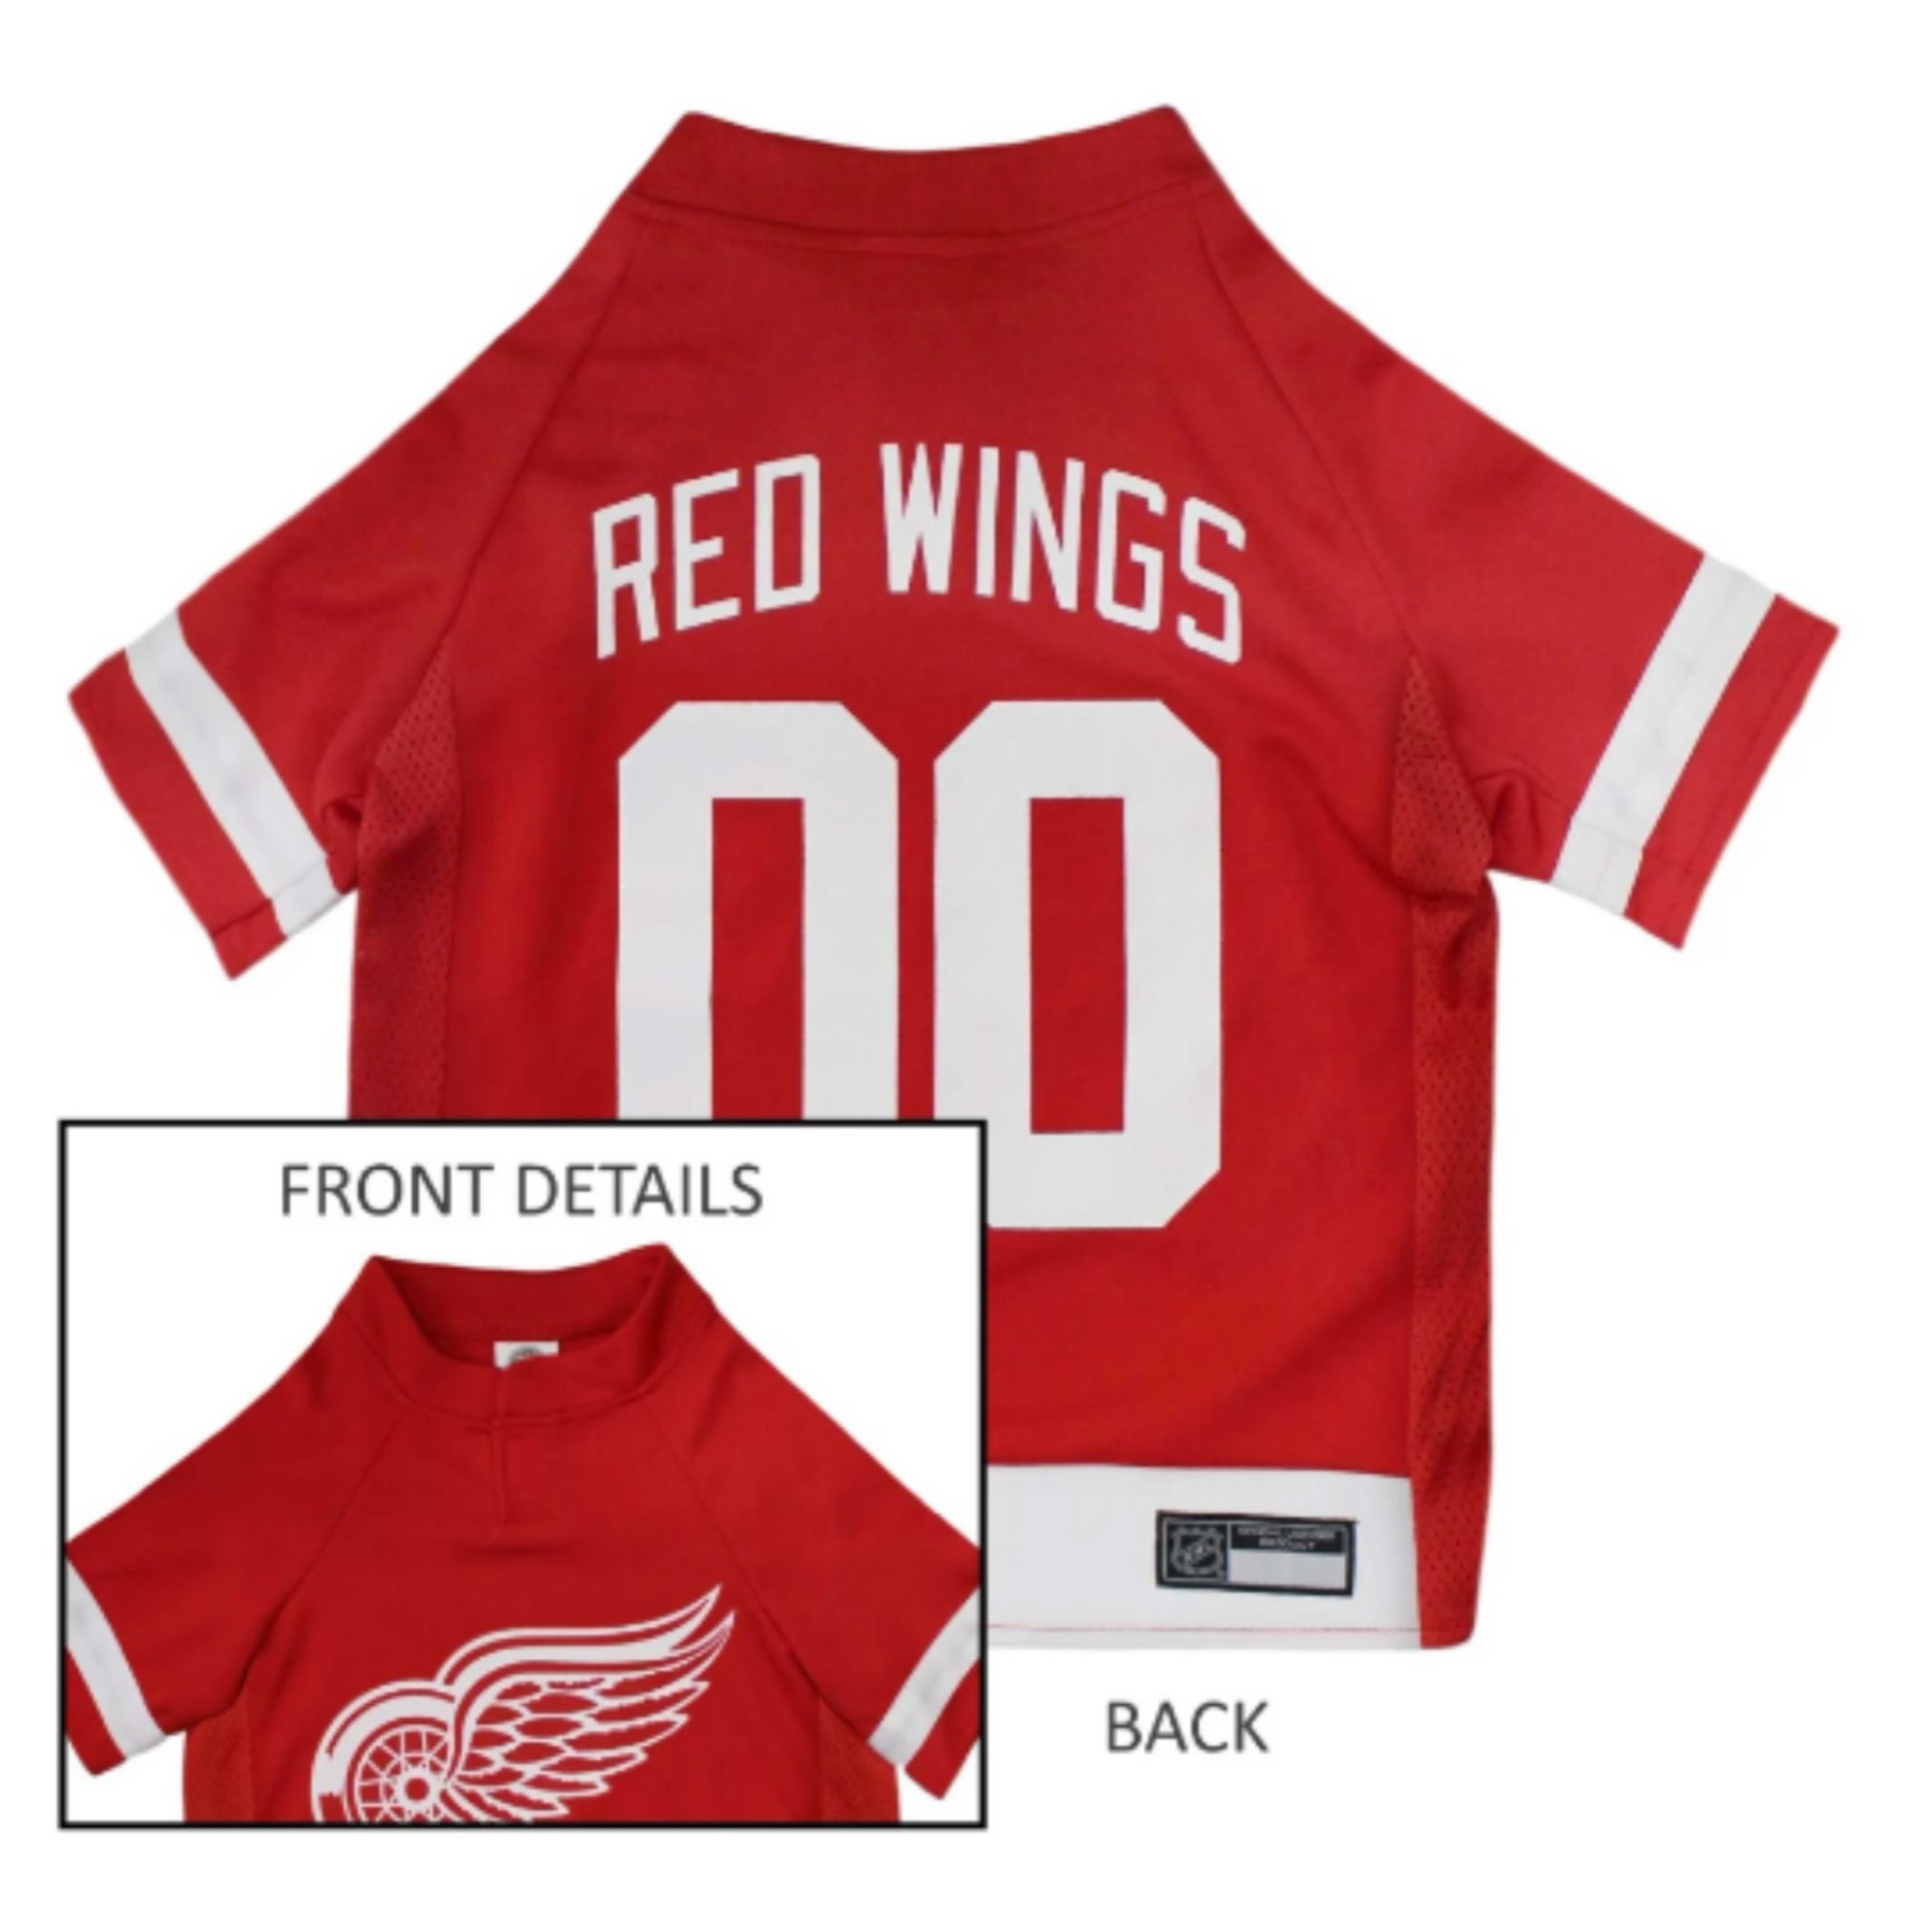 Fanatics Red Wings Replica Jersey - Dylan Larkin - Adult